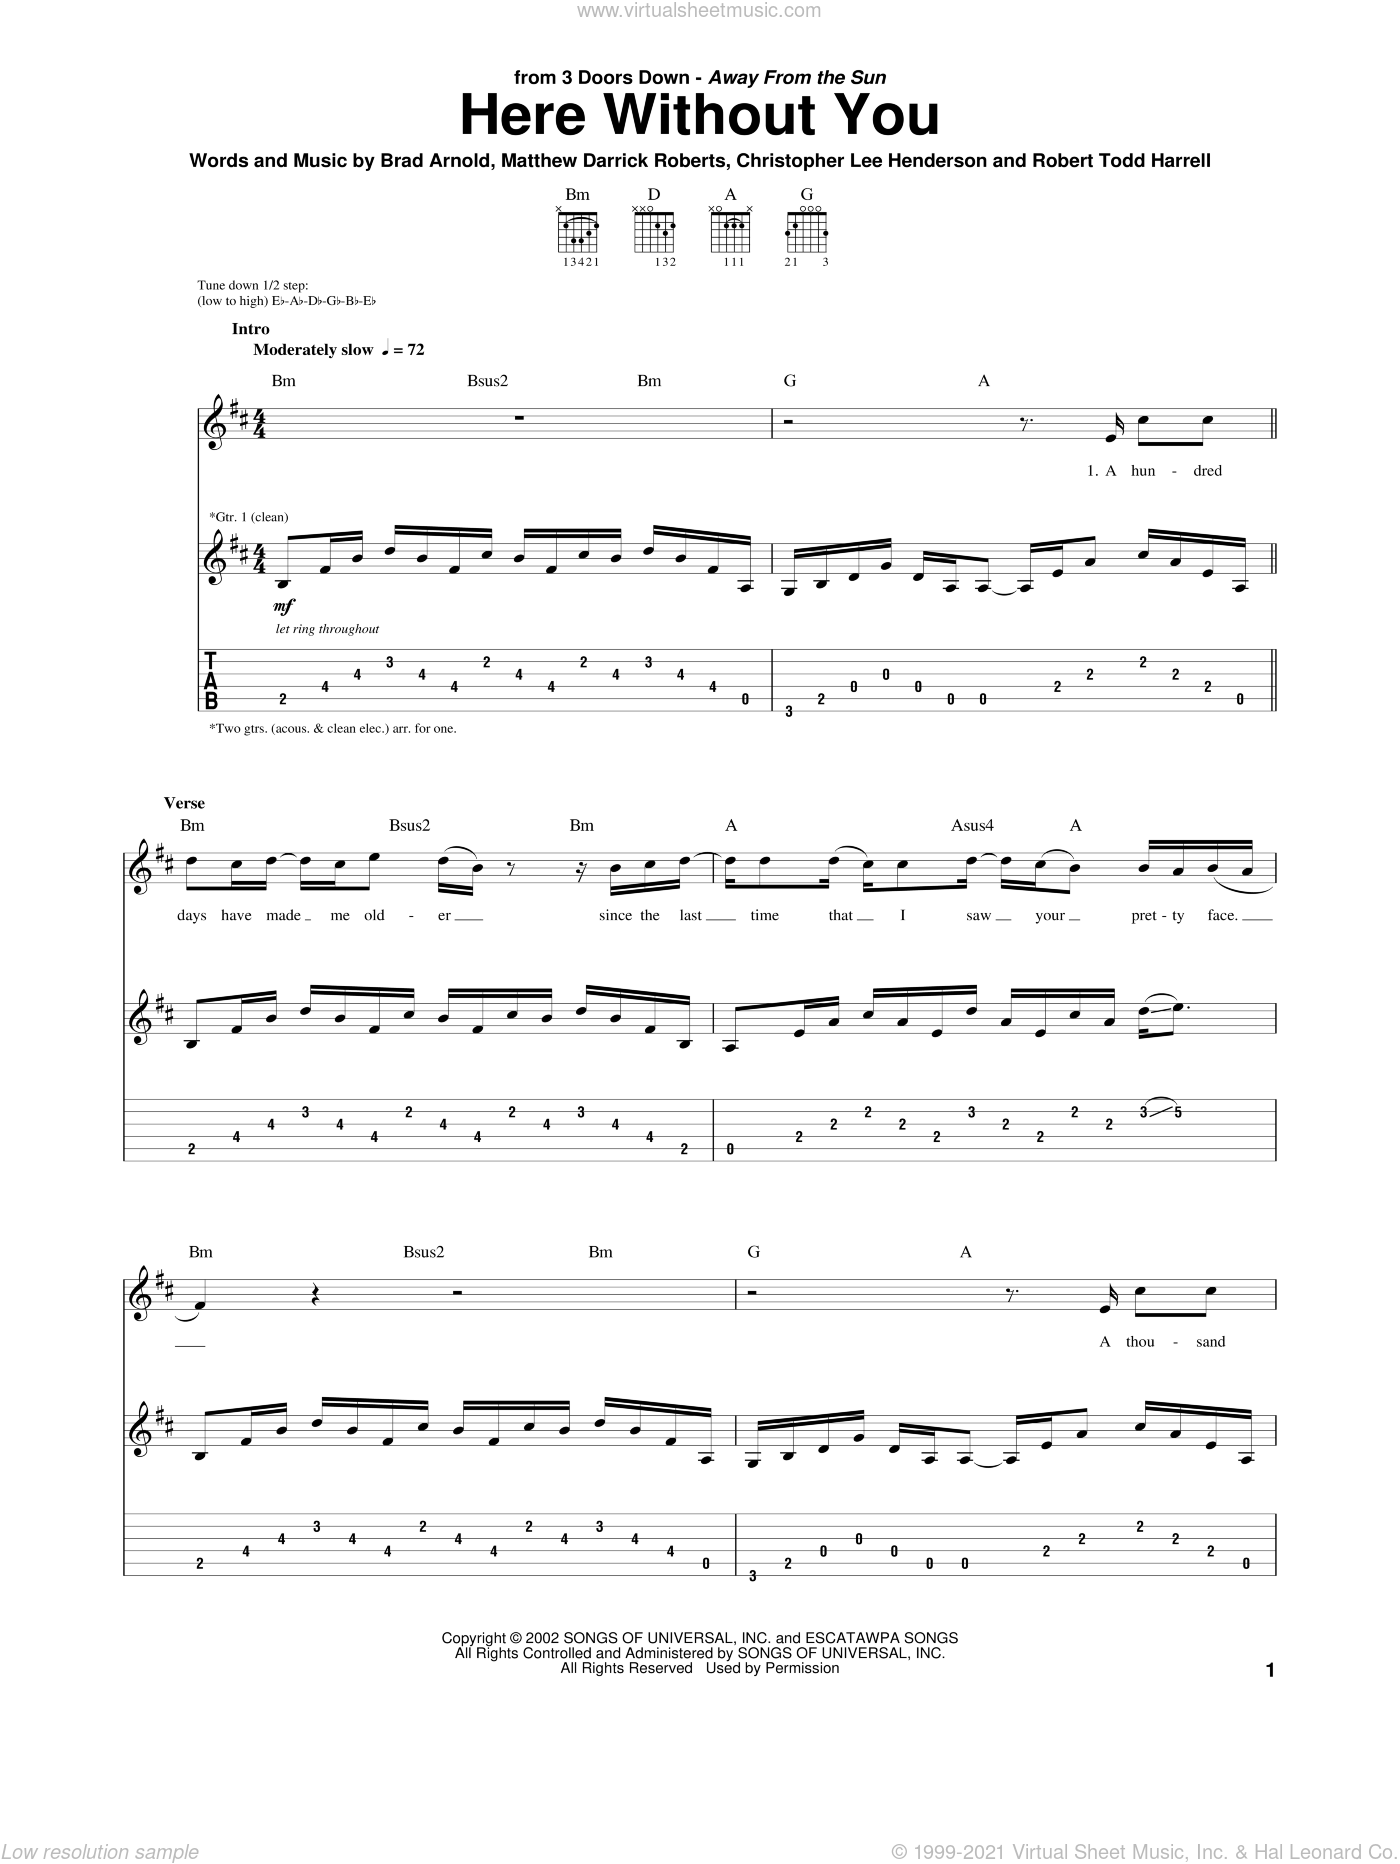 3 Doors Down for Guitar Play-along Vol 60 Notes & Tab Sheet 